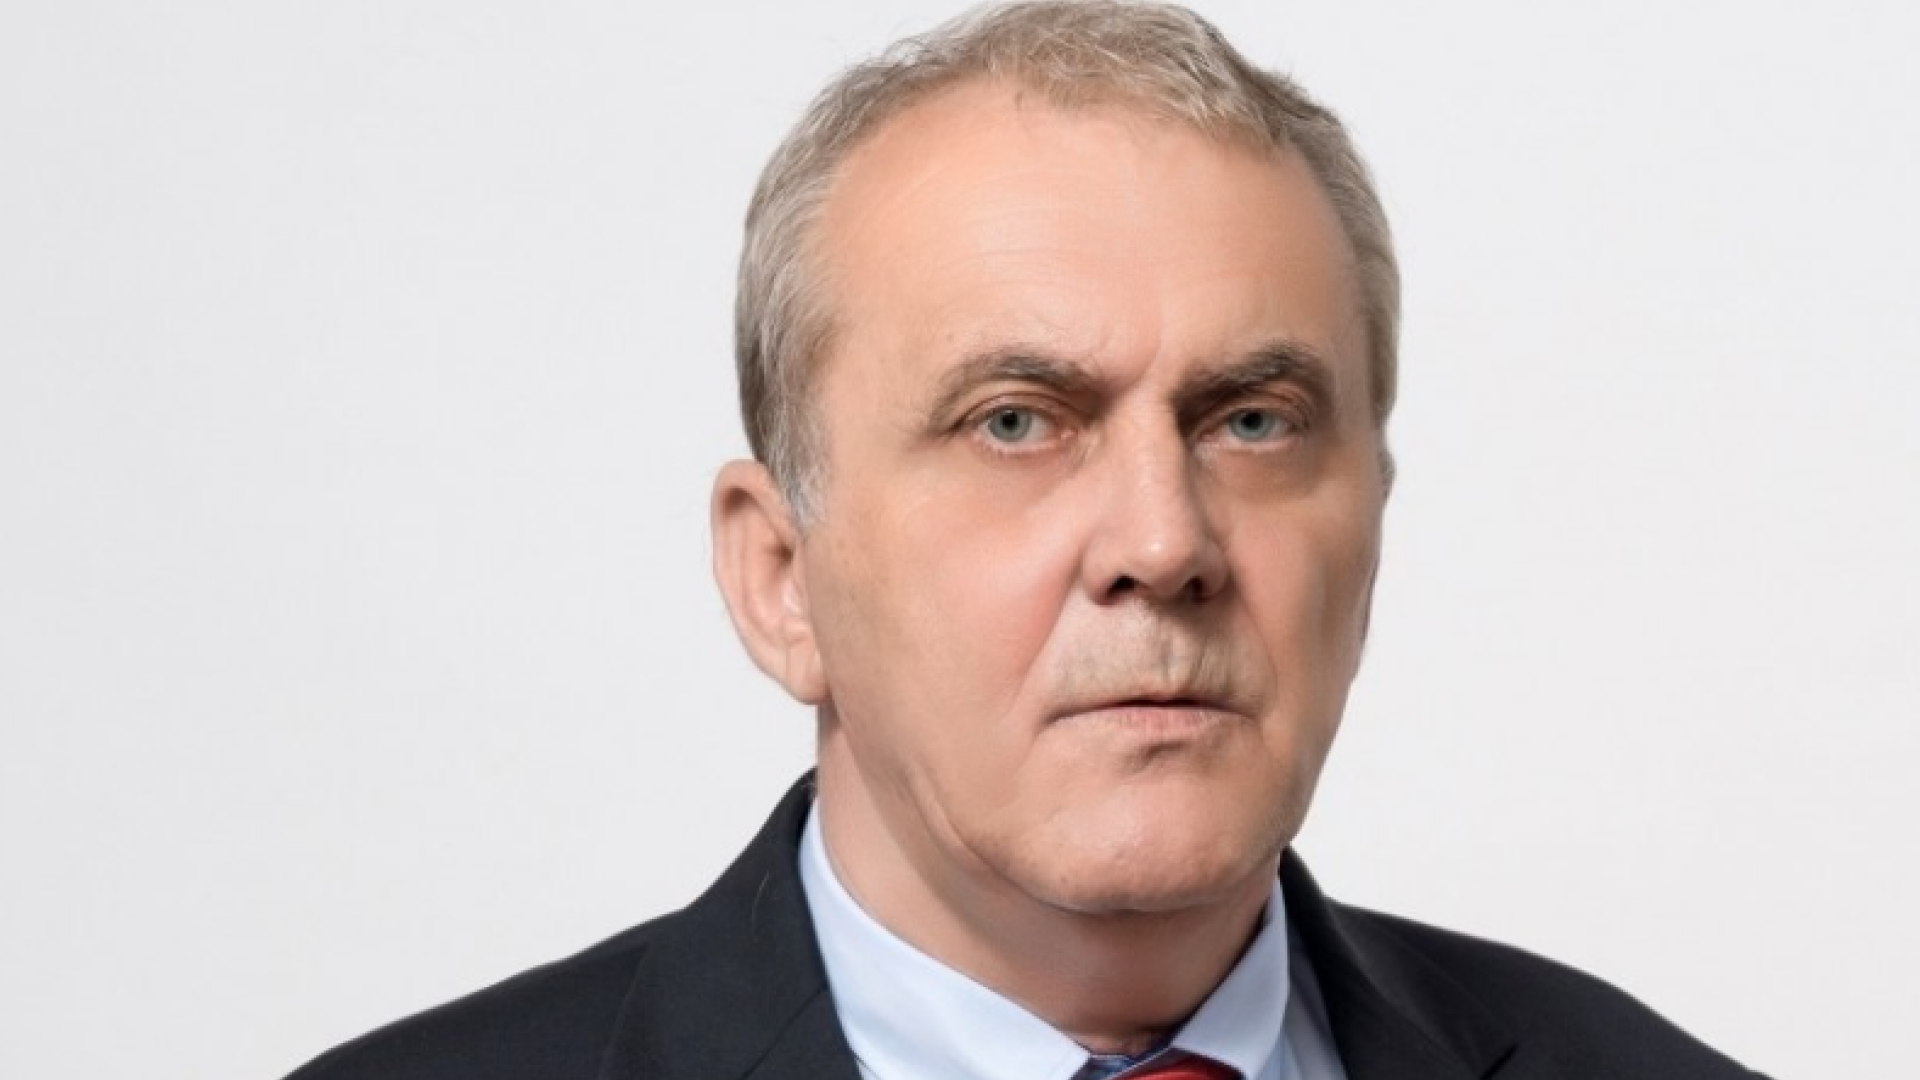 Ion Georgescu, suspendat din funcţia de primar al oraşului Mioveni